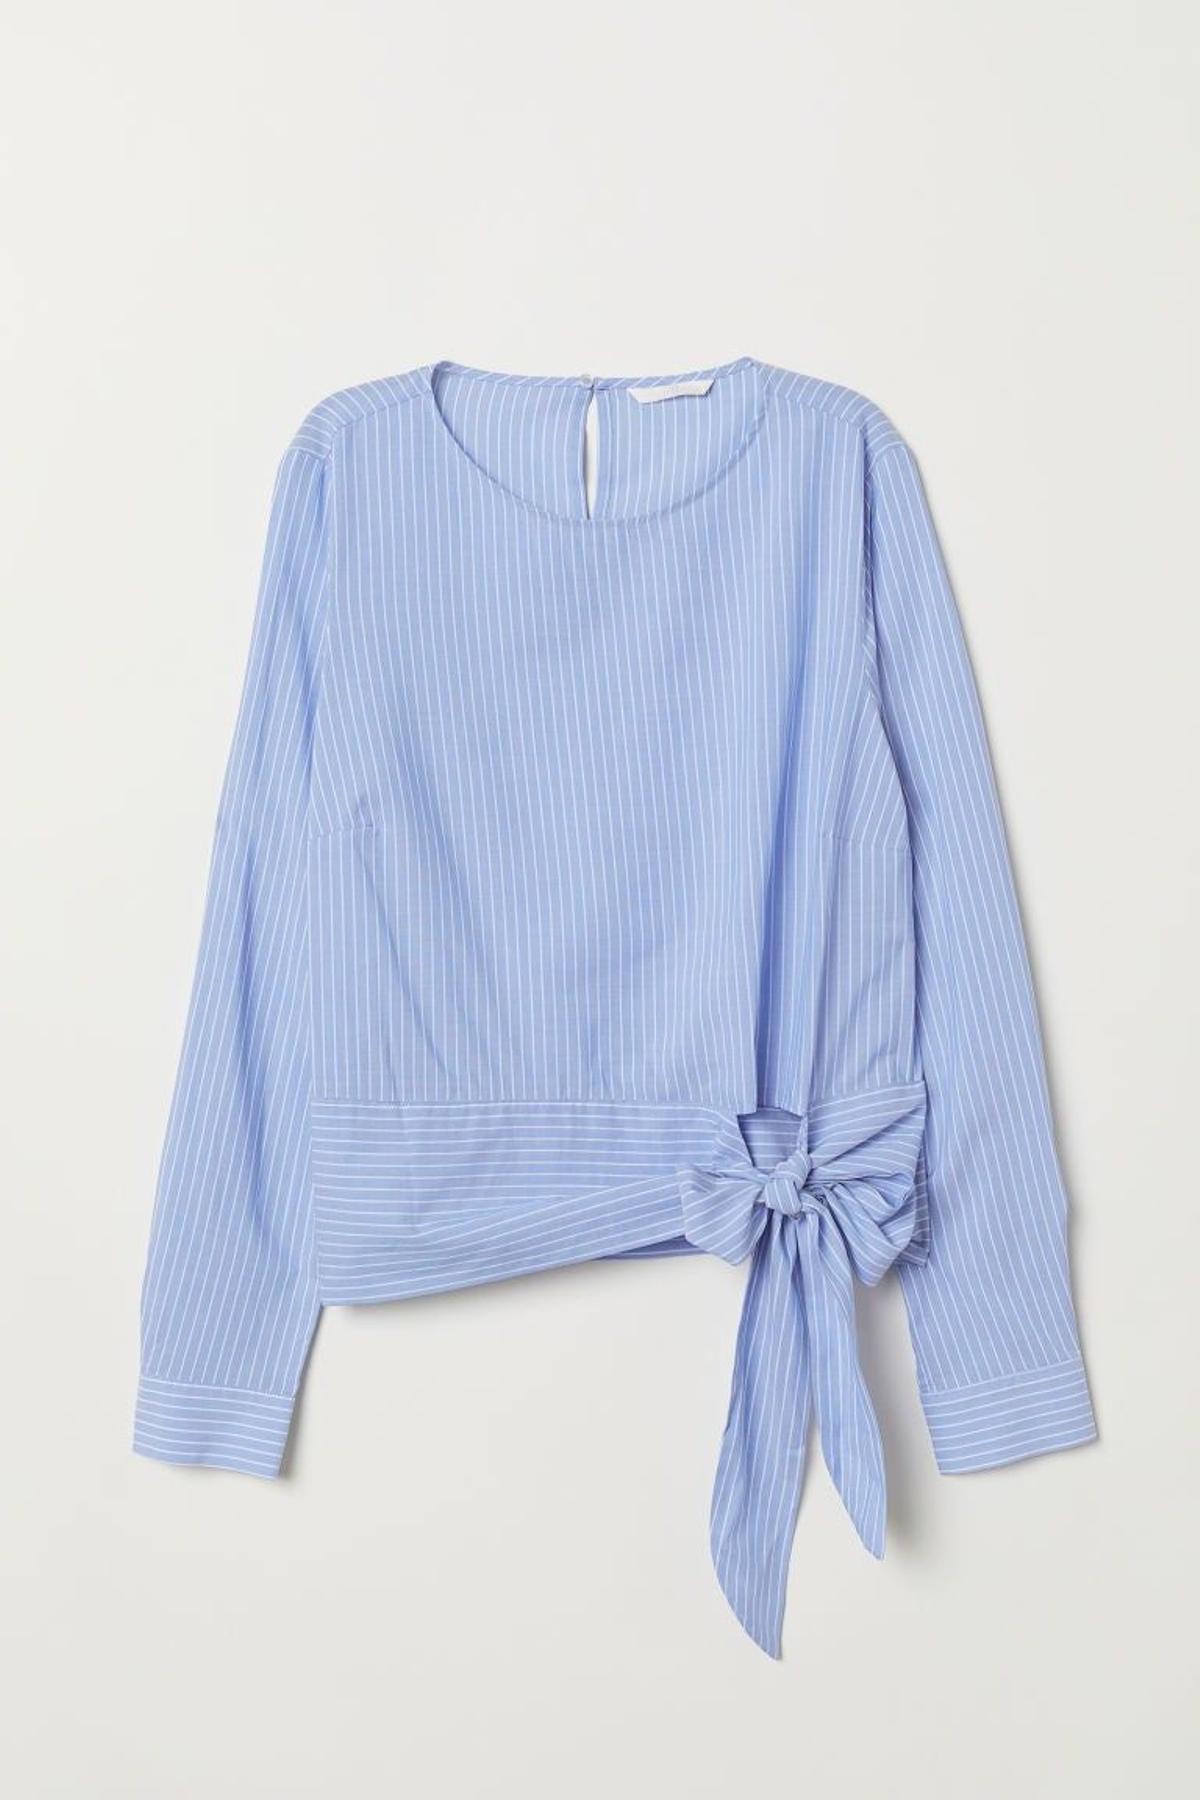 Blusa azul de rayas. (Precio: 16,99 euros)